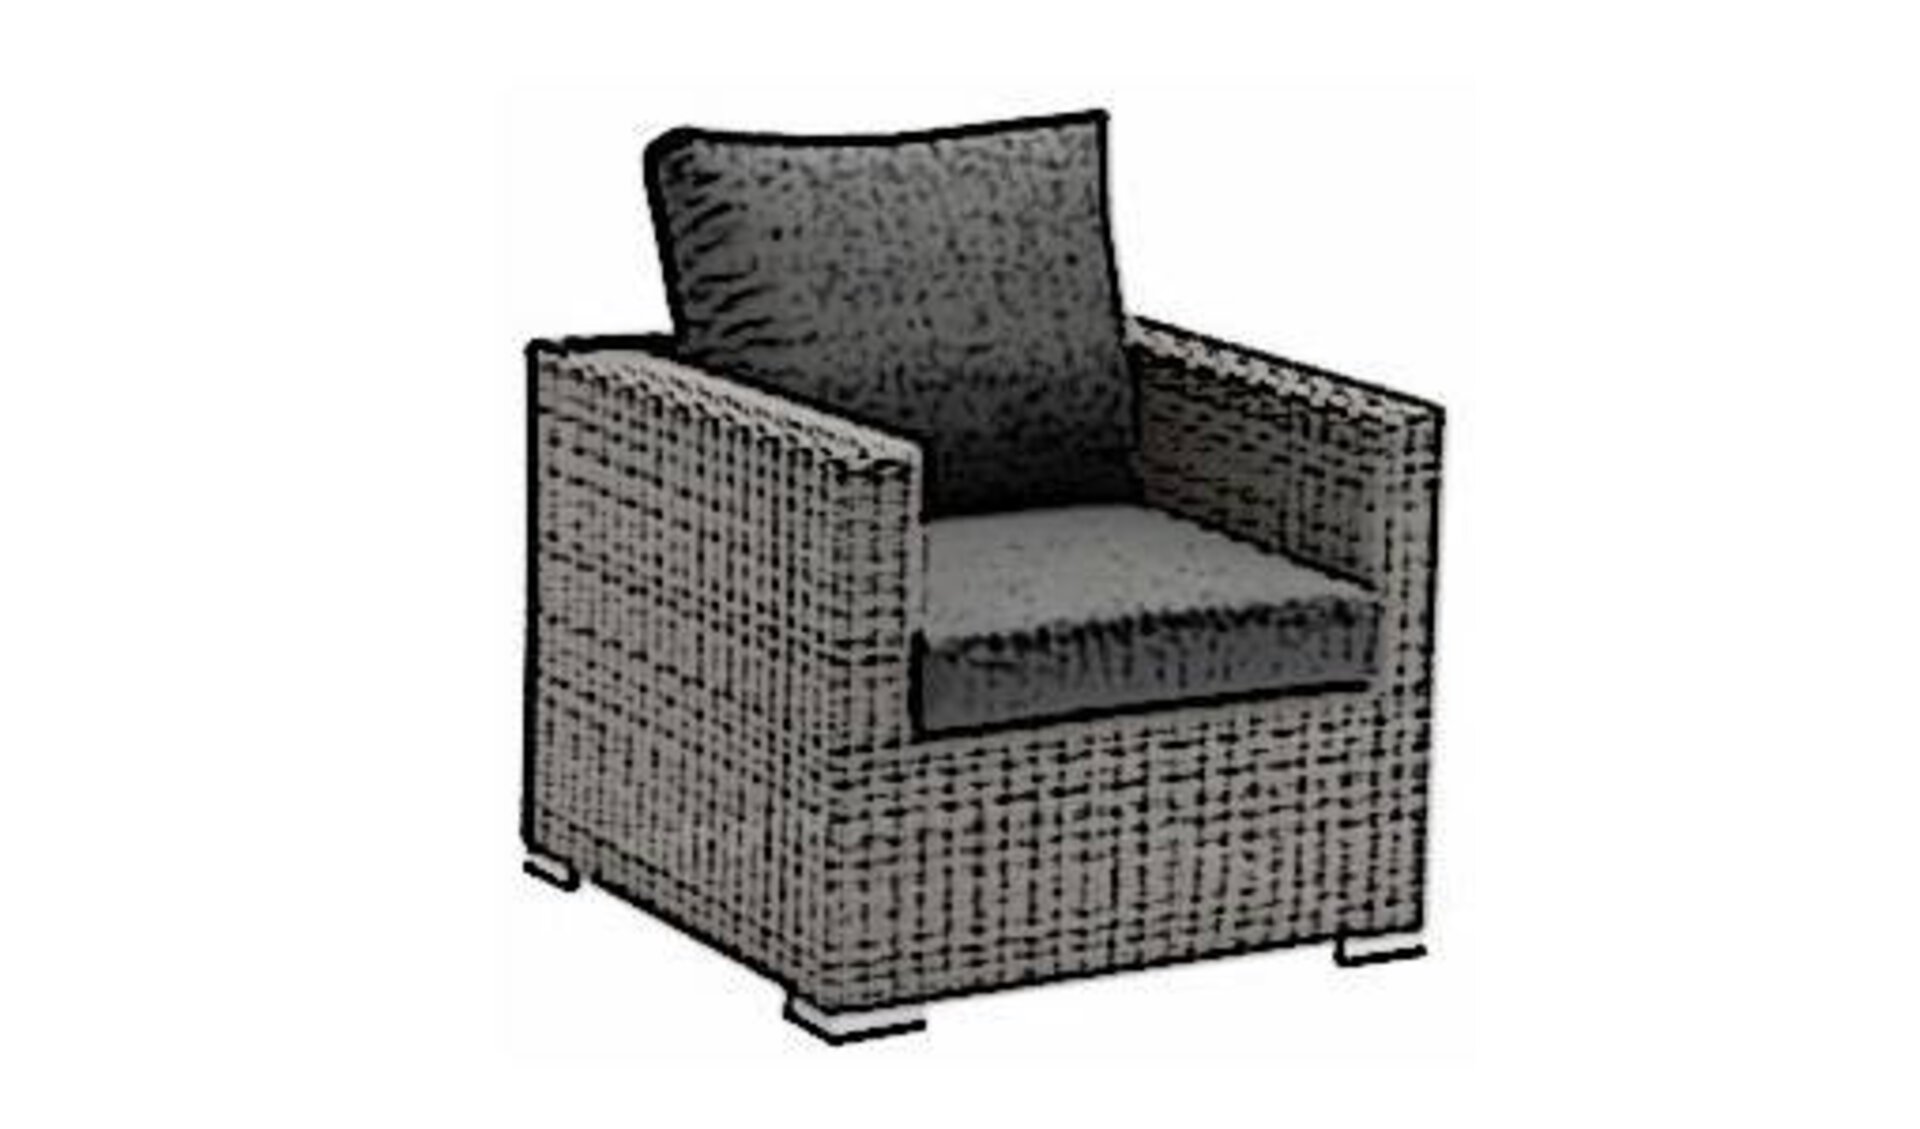 Icon für Loungemöbel innerhalb der Kategorie "Garten" ist ein Rattansessel mit Polsterauflage und Rückenkissen.